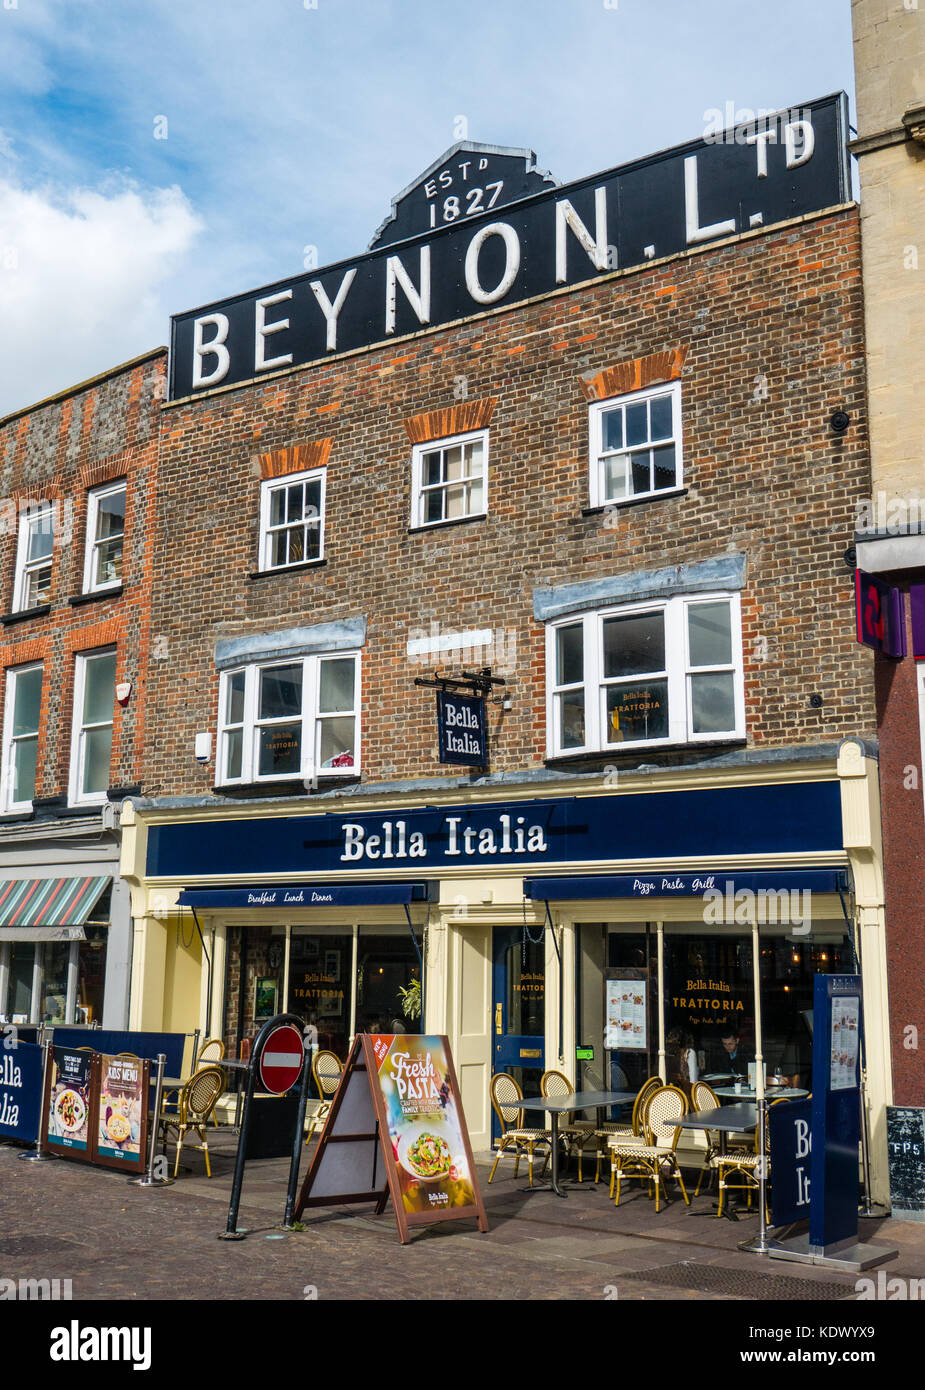 Bella Italia Restaurant, im historischen Beynon LTD Gebäude, Market Place, Newbury, Berkshire, England, Großbritannien, GB. Stockfoto